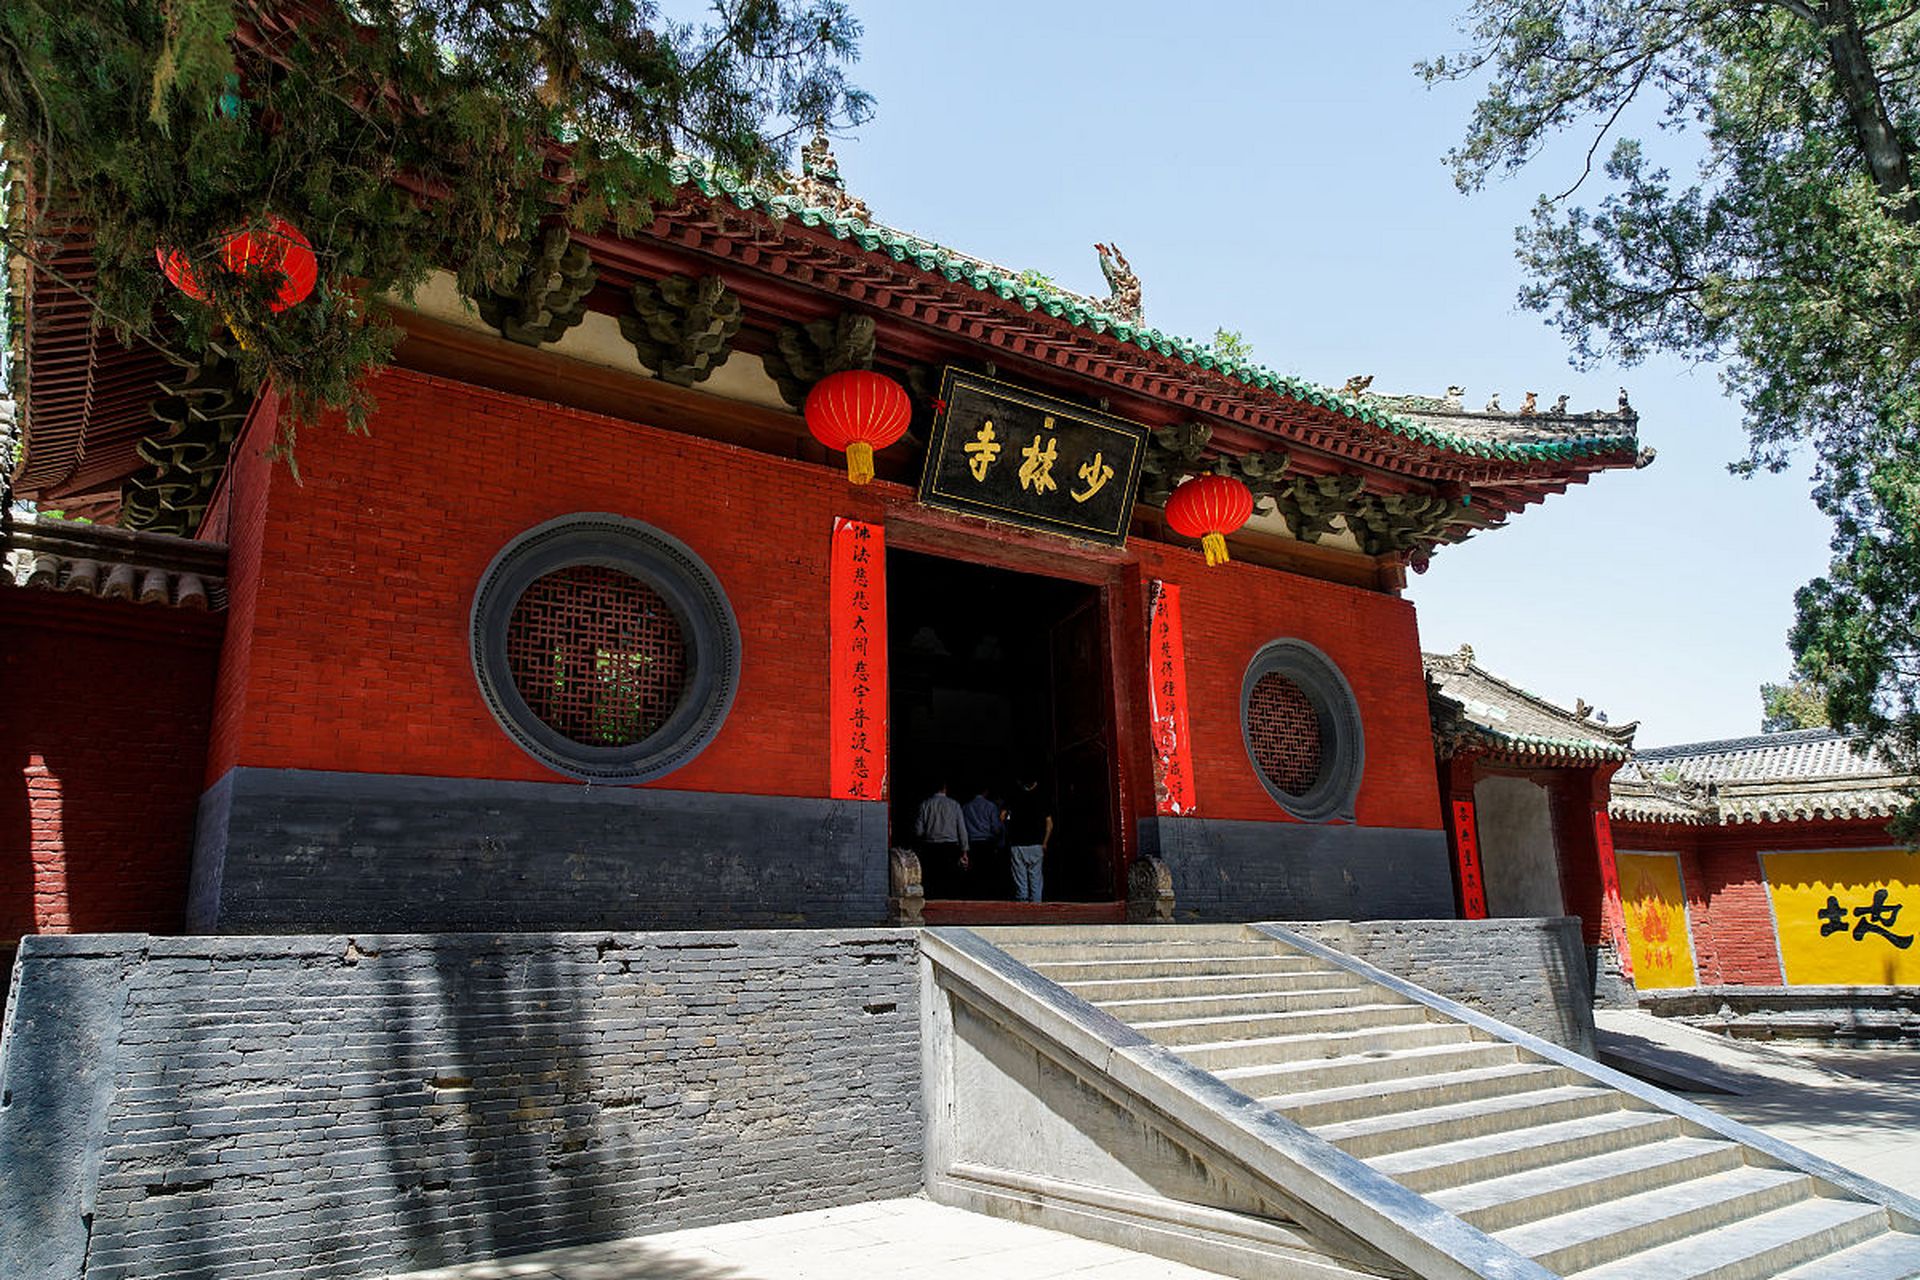 到了郑州,总要去一趟少林寺吧?这是许多游客的共识